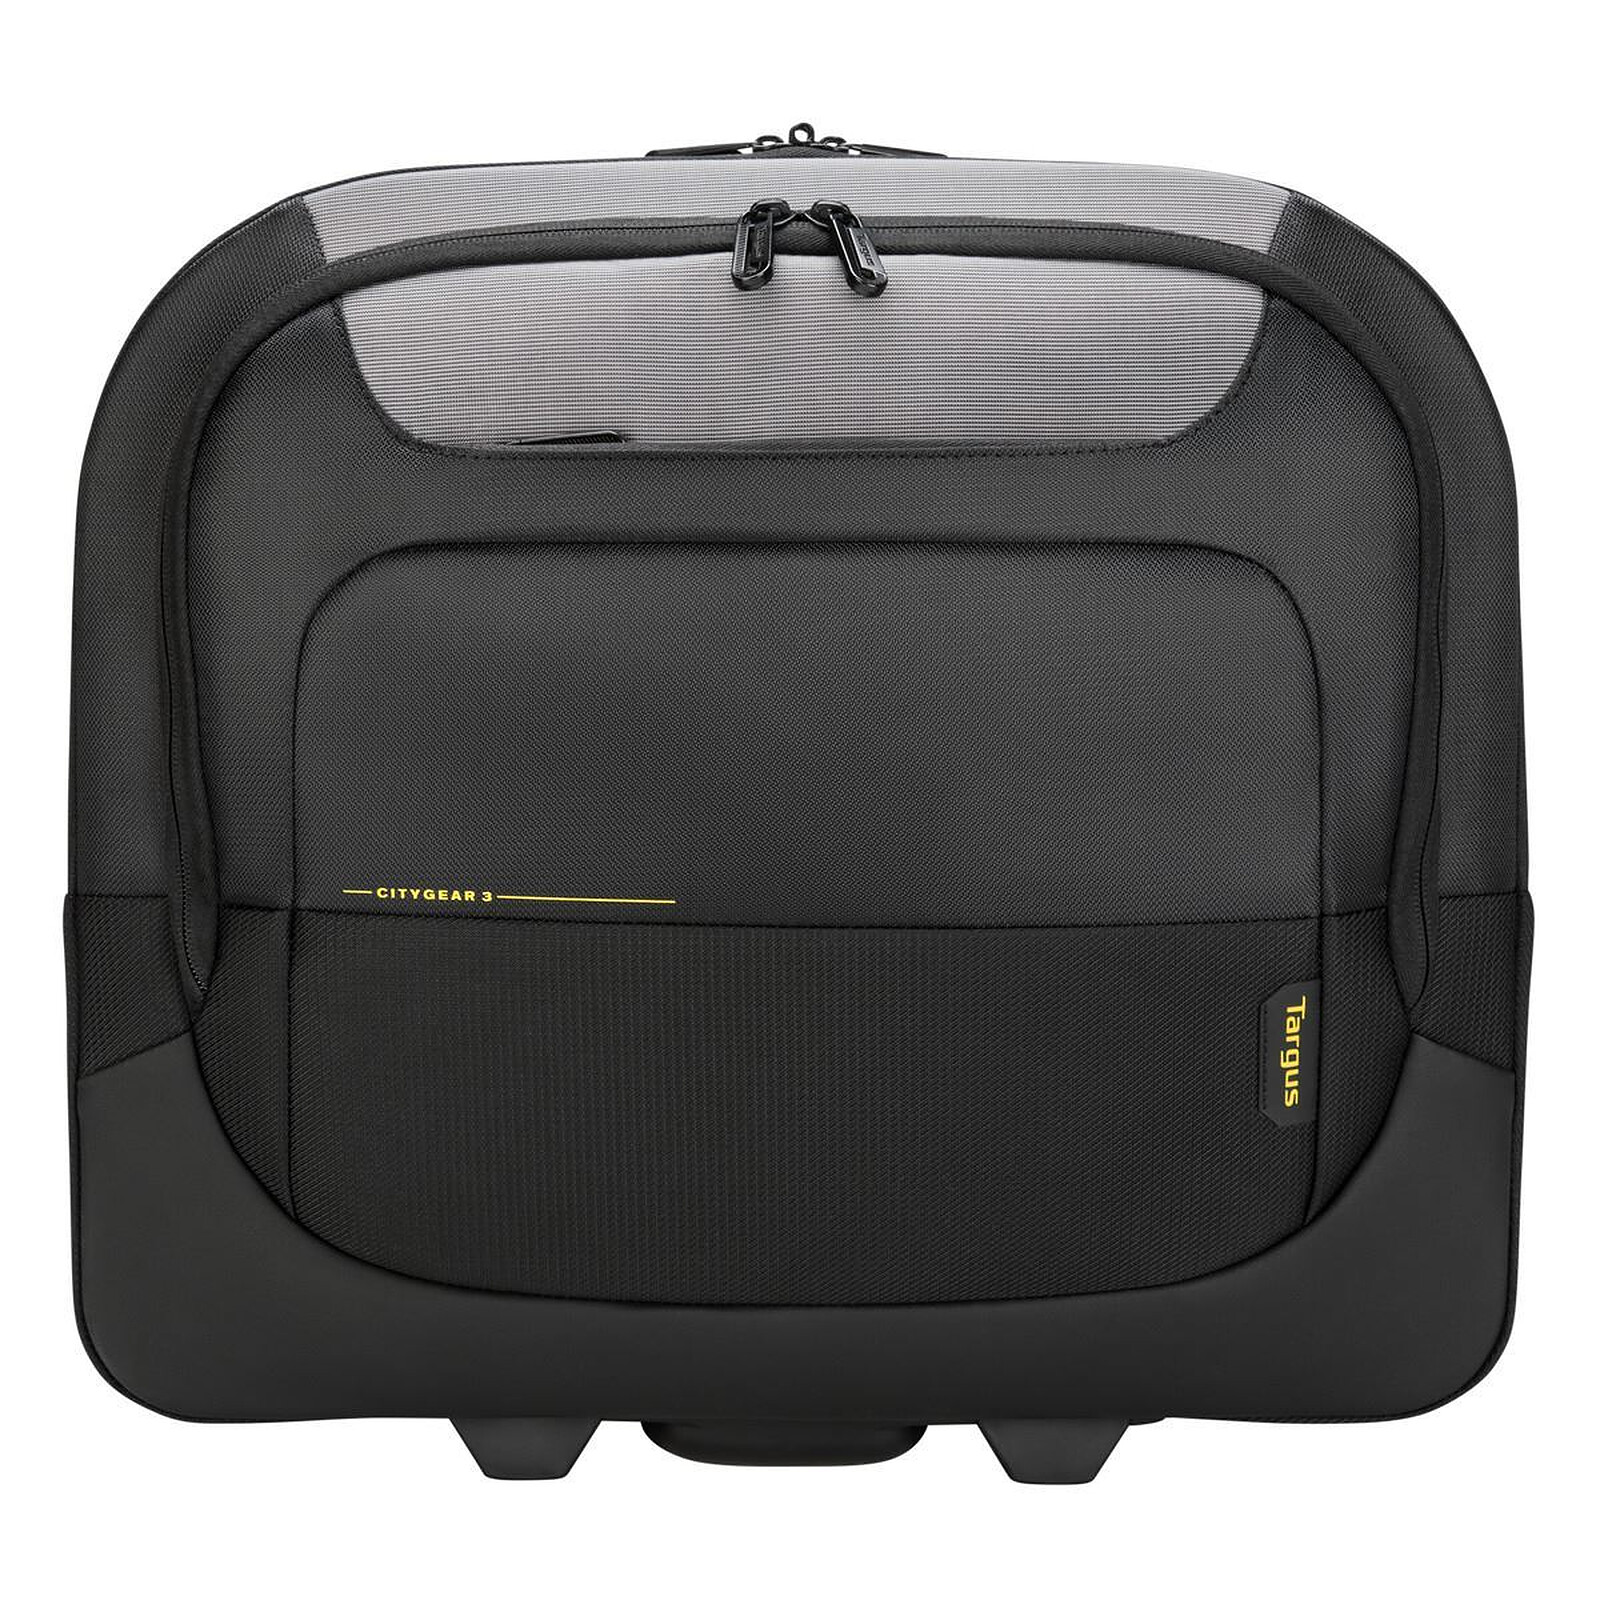 nombre de la marca Se convierte en Estéril Targus CityGear 3 Roller Laptop Case 17.3" Negro - Bolsa, maletín, funda  Targus en LDLC